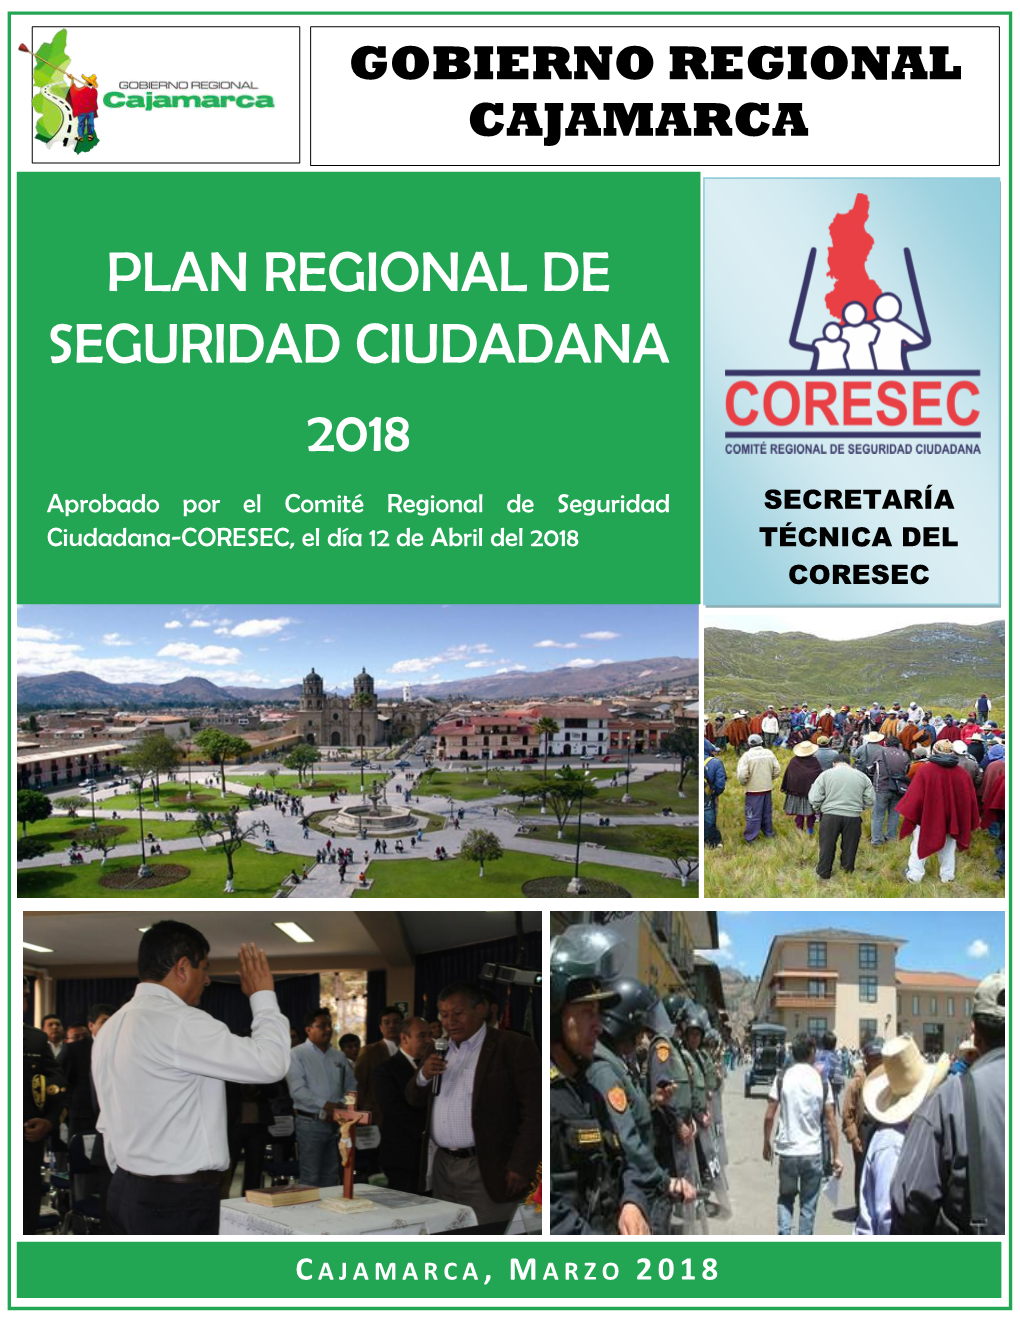 Plan Regional De Seguridad Ciudadana 2018 - Cajamarca